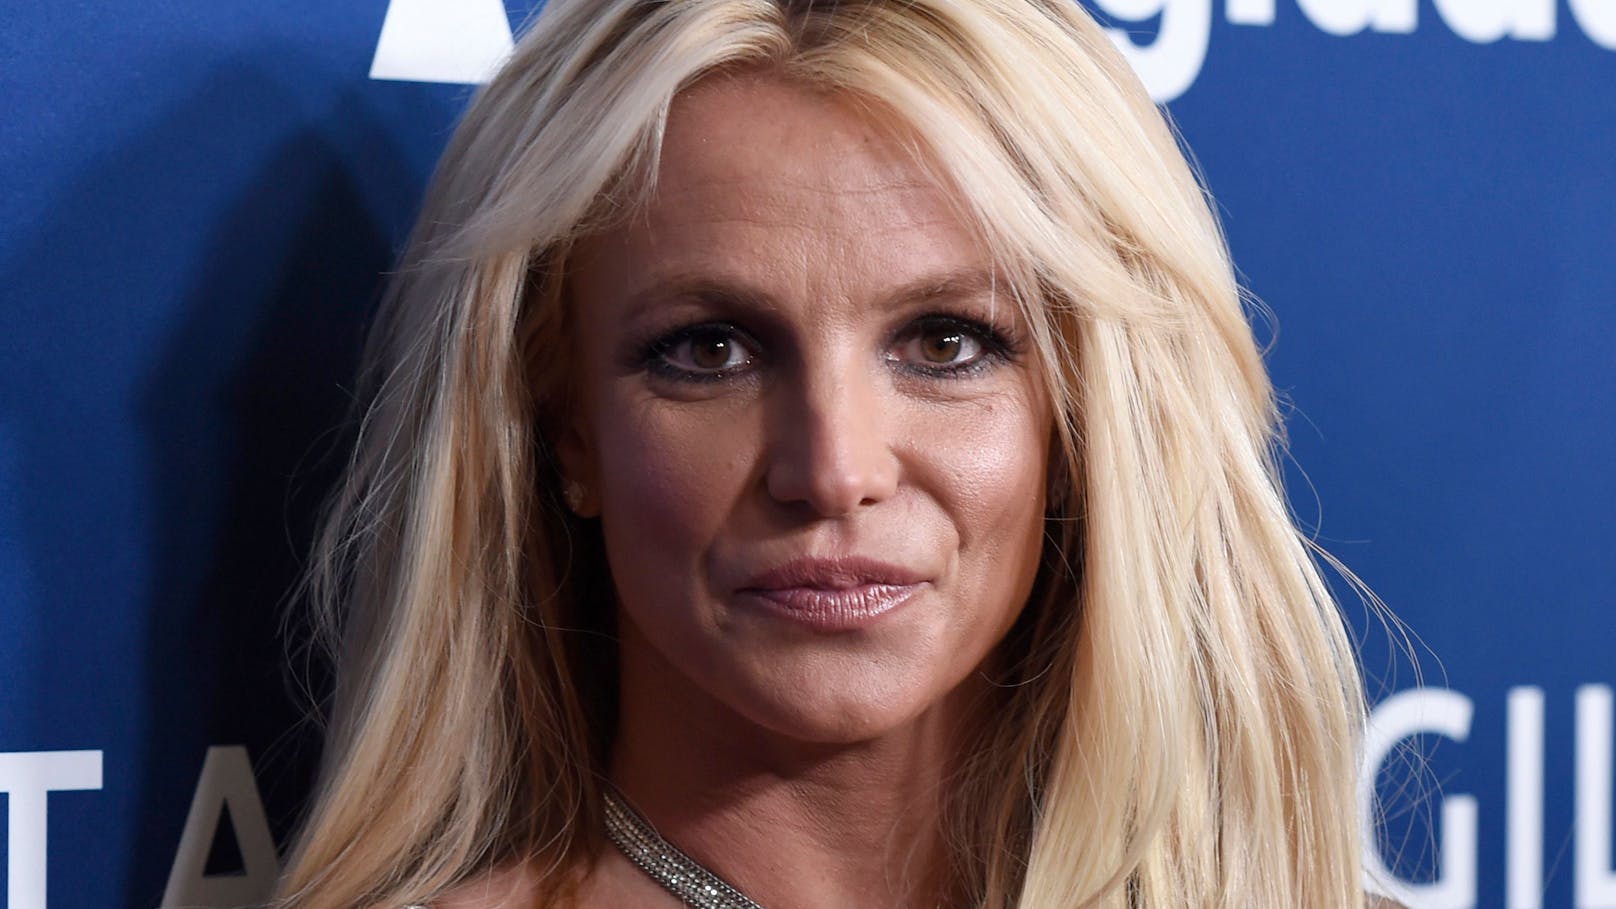 Polizei & Rettung! Drama um Britney Spears in Hotel